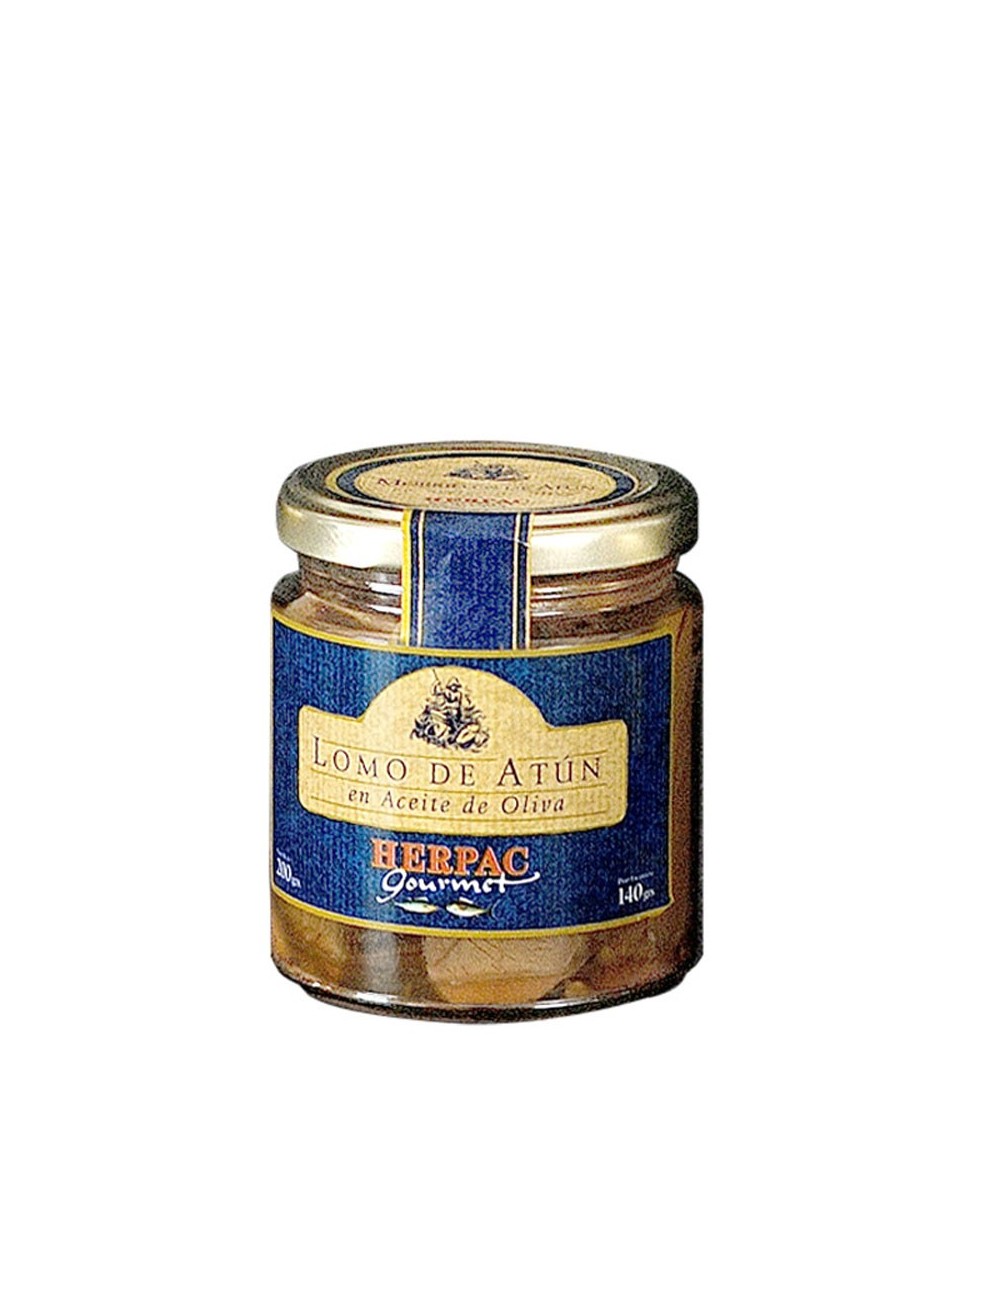 Red Tuna Loin in Olive Oil Herpac